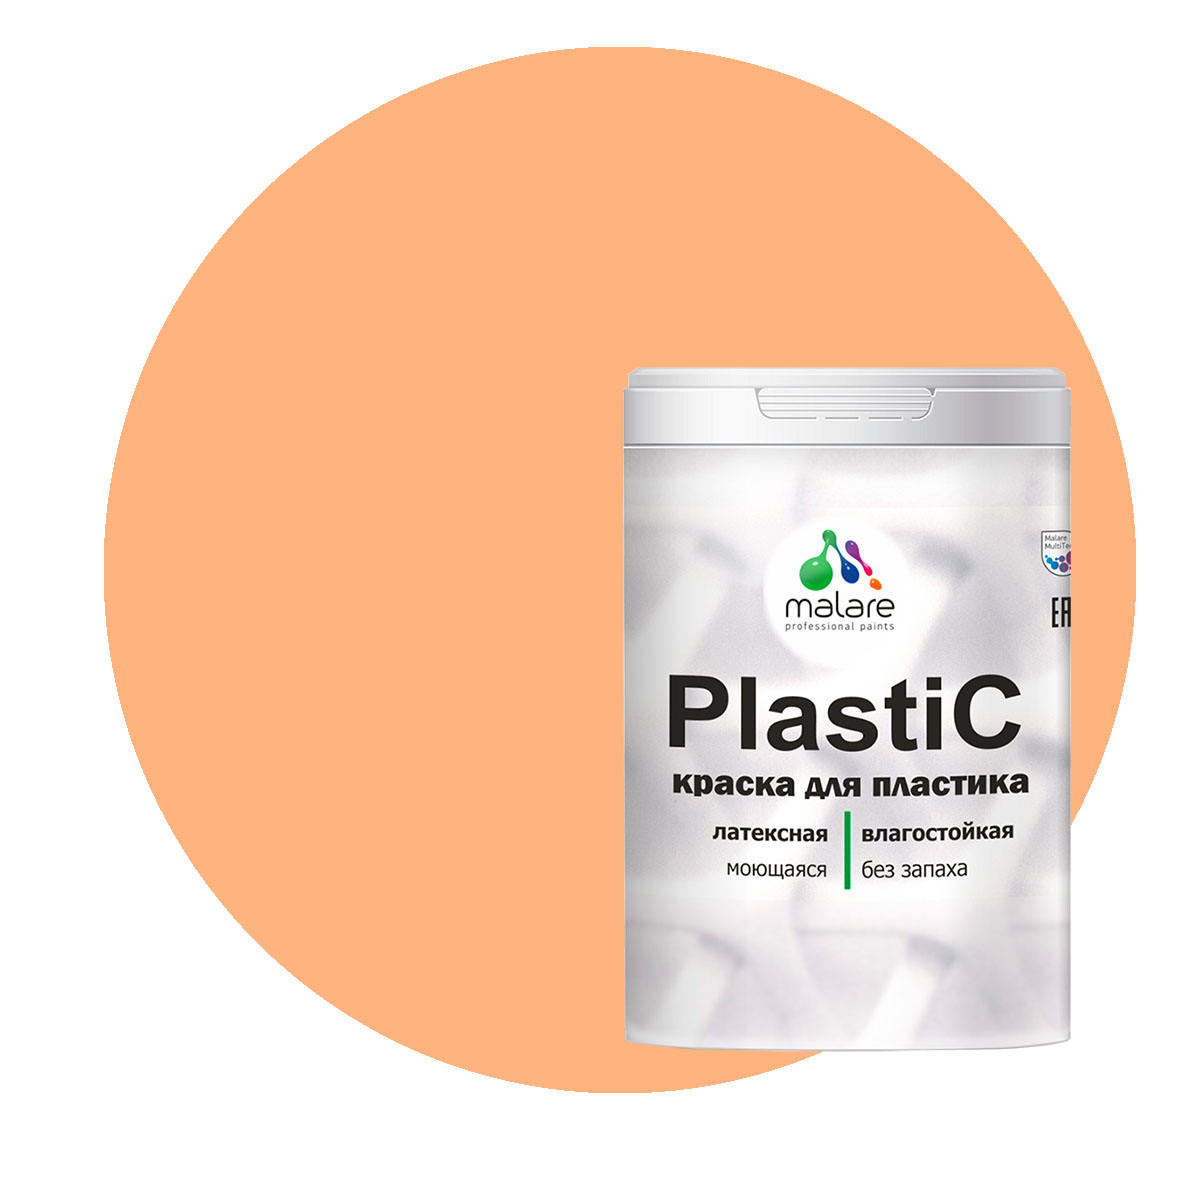 Краска Malare PlastiC для пластика, ПВХ, для сайдинга, свежая охра, 2 кг. краска malare plastic для пластика пвх для сайдинга слоновая кость 10 кг